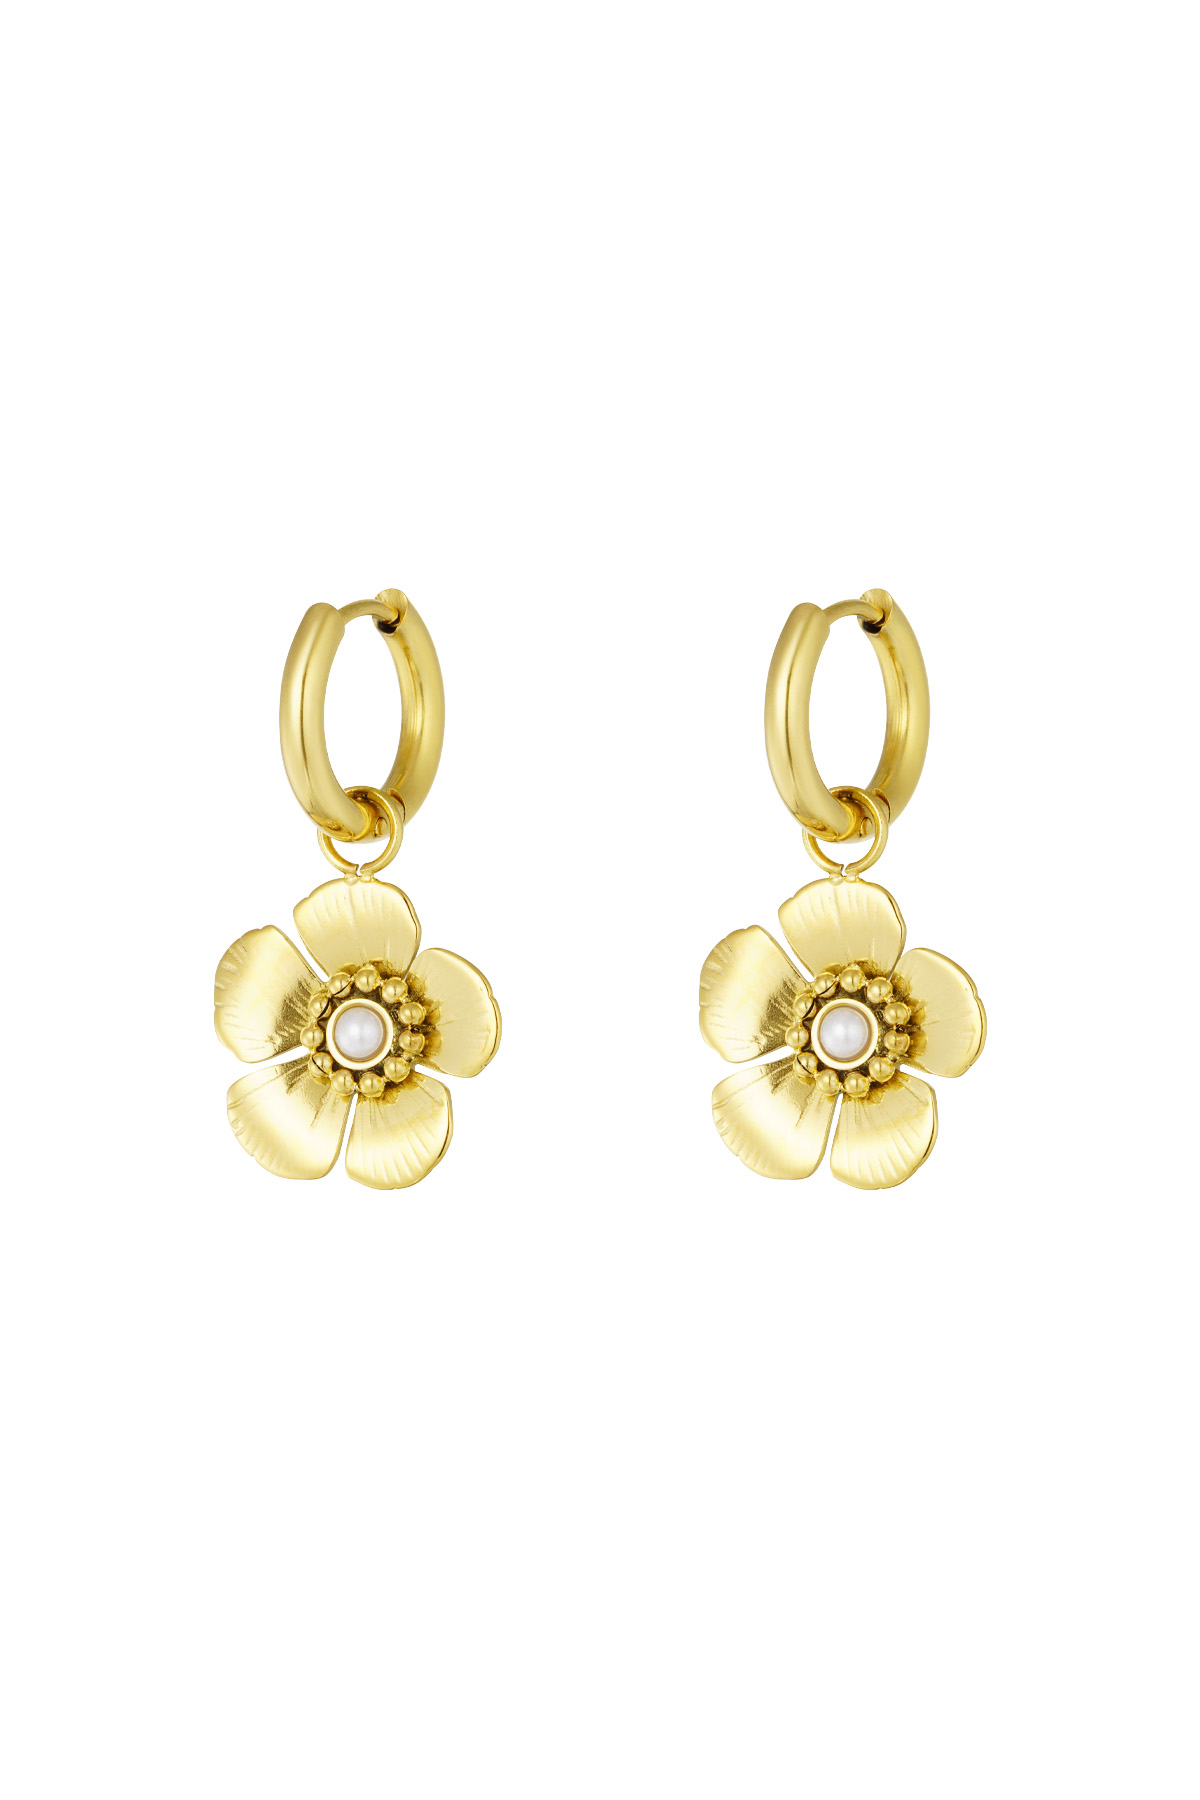 Ohrring mit süßem Blumenanhänger - Gold h5 